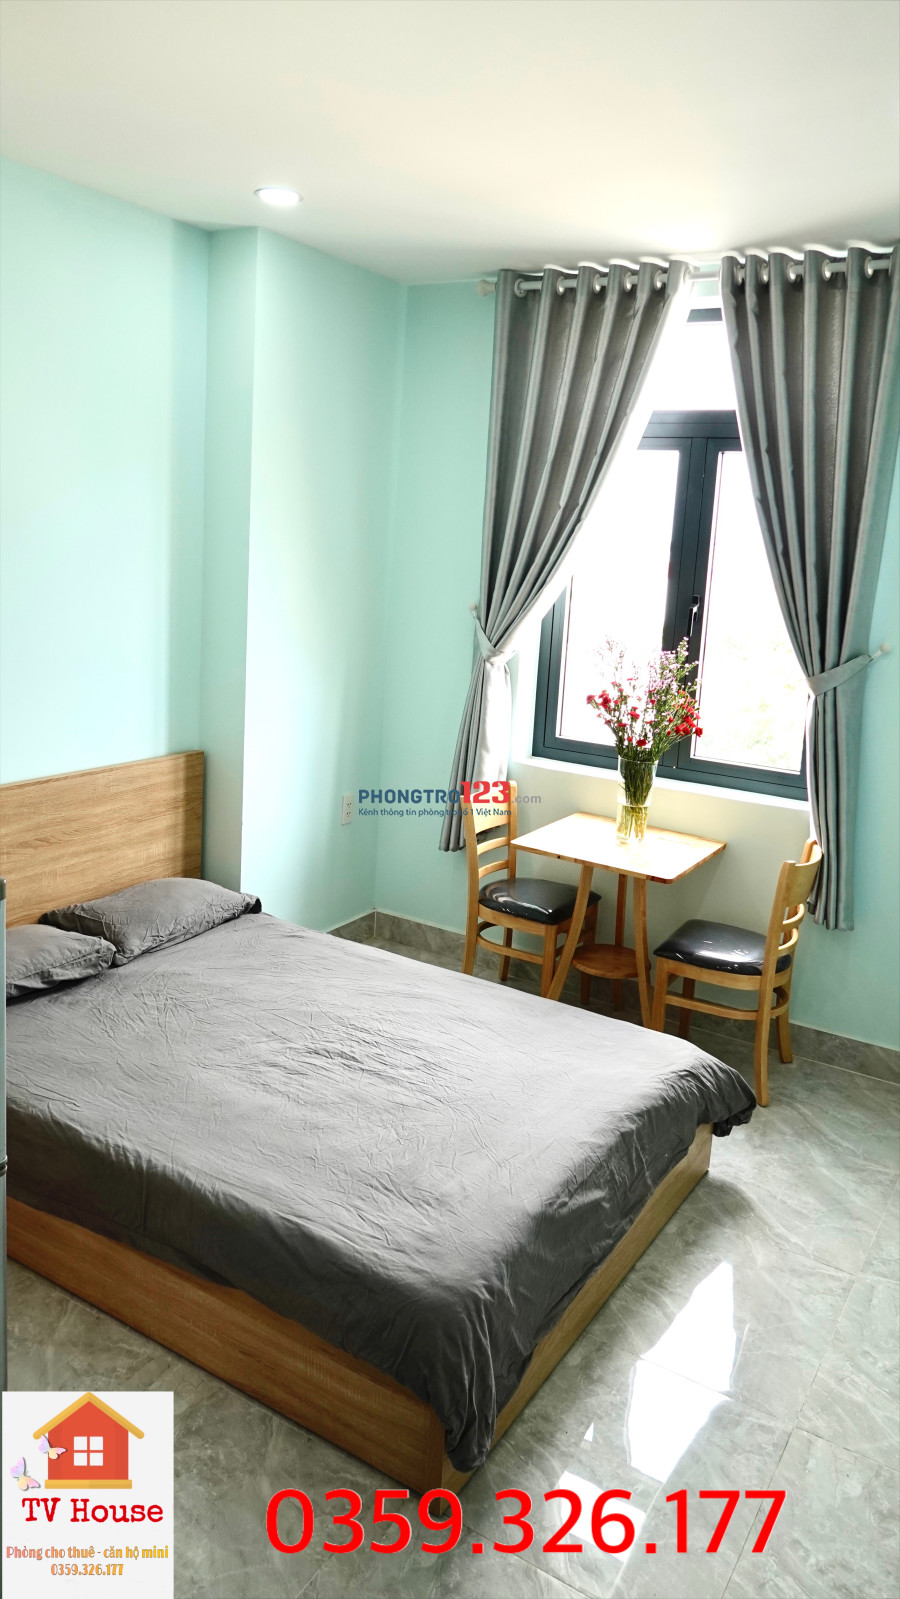 Phòng trọ cao cấp cho thuê quận Bình Tân-khu Tên Lửa- Giá từ 3.5tr/tháng